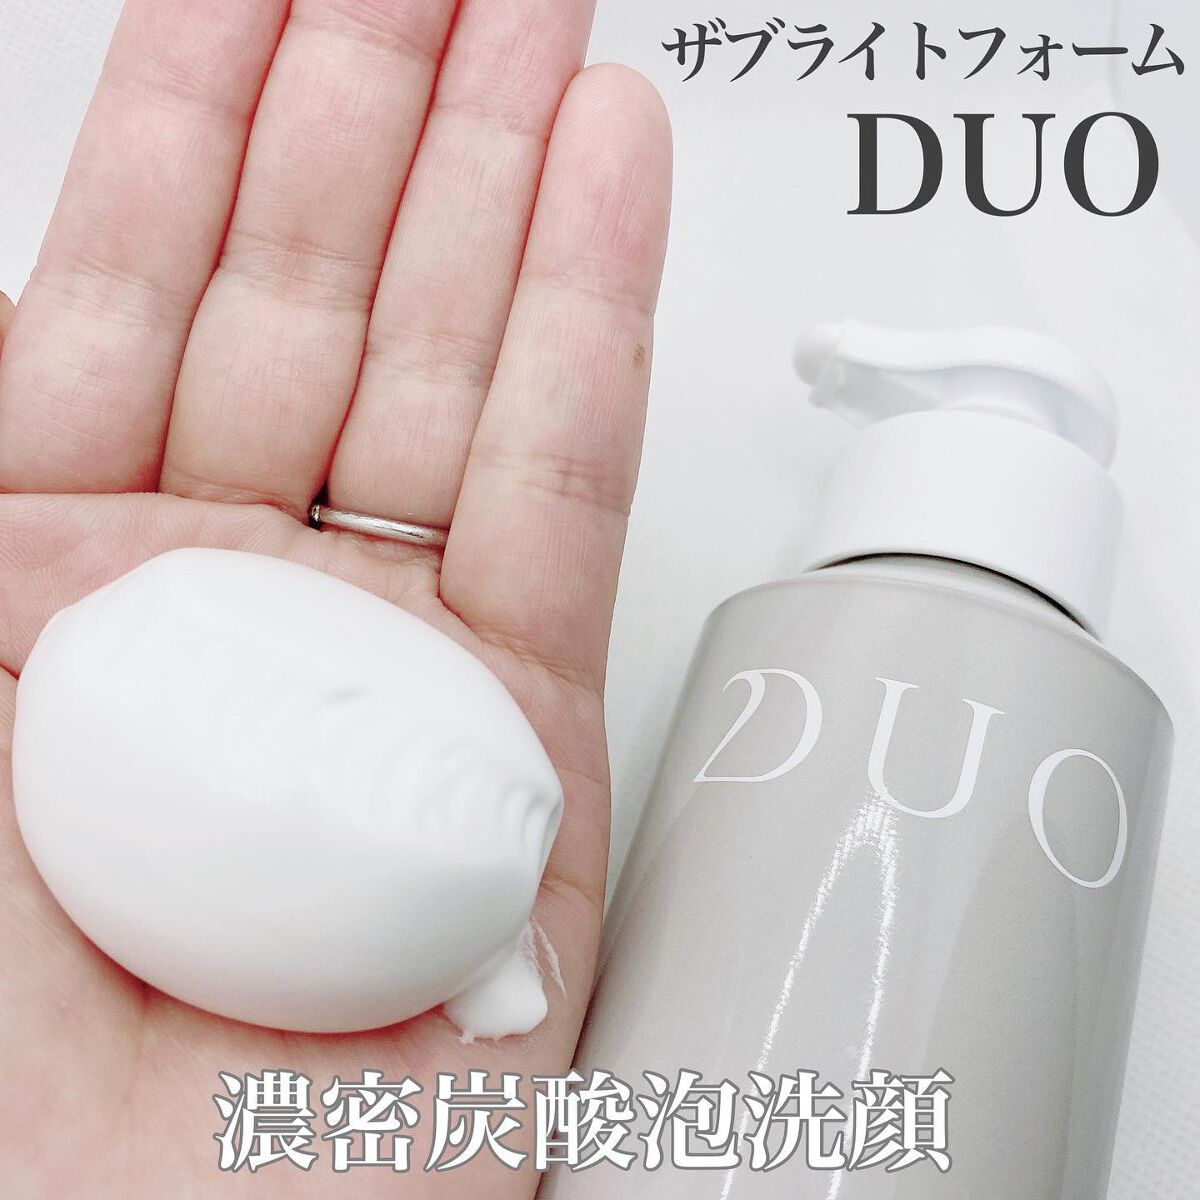 DUO ザ ブライトフォーム 150g 新規購入 - 洗顔グッズ